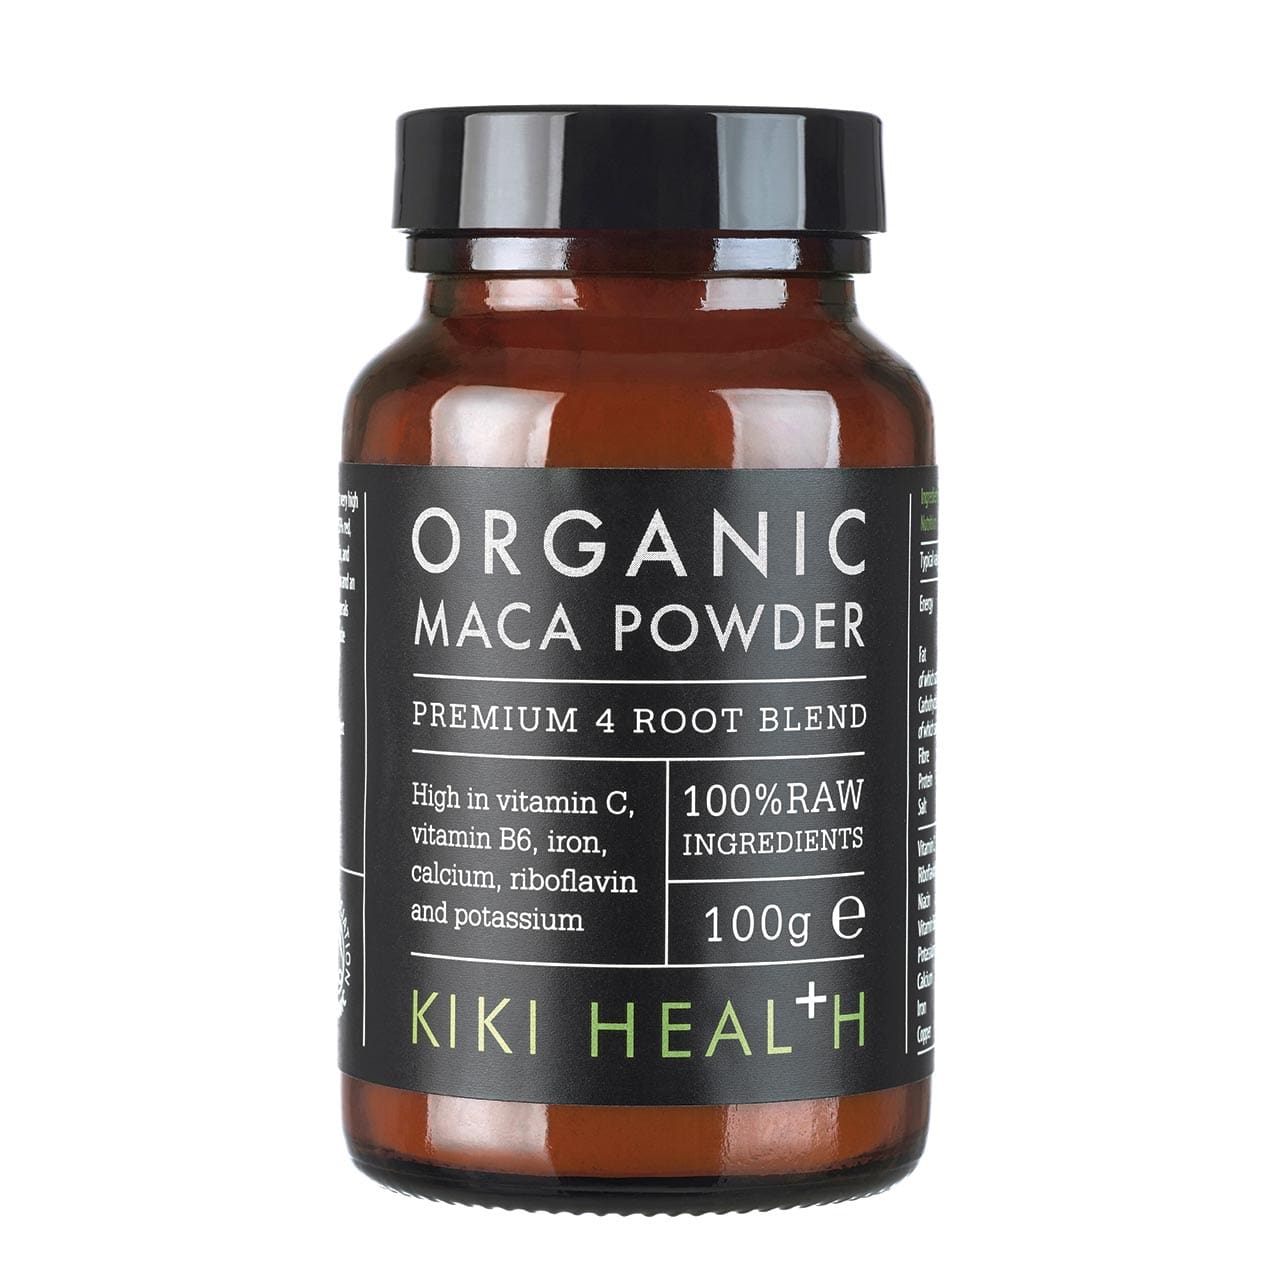 KIKI HEALTHOrganic MACA Premium 4 Root Blend PowderOrganic MACARED SUPPS